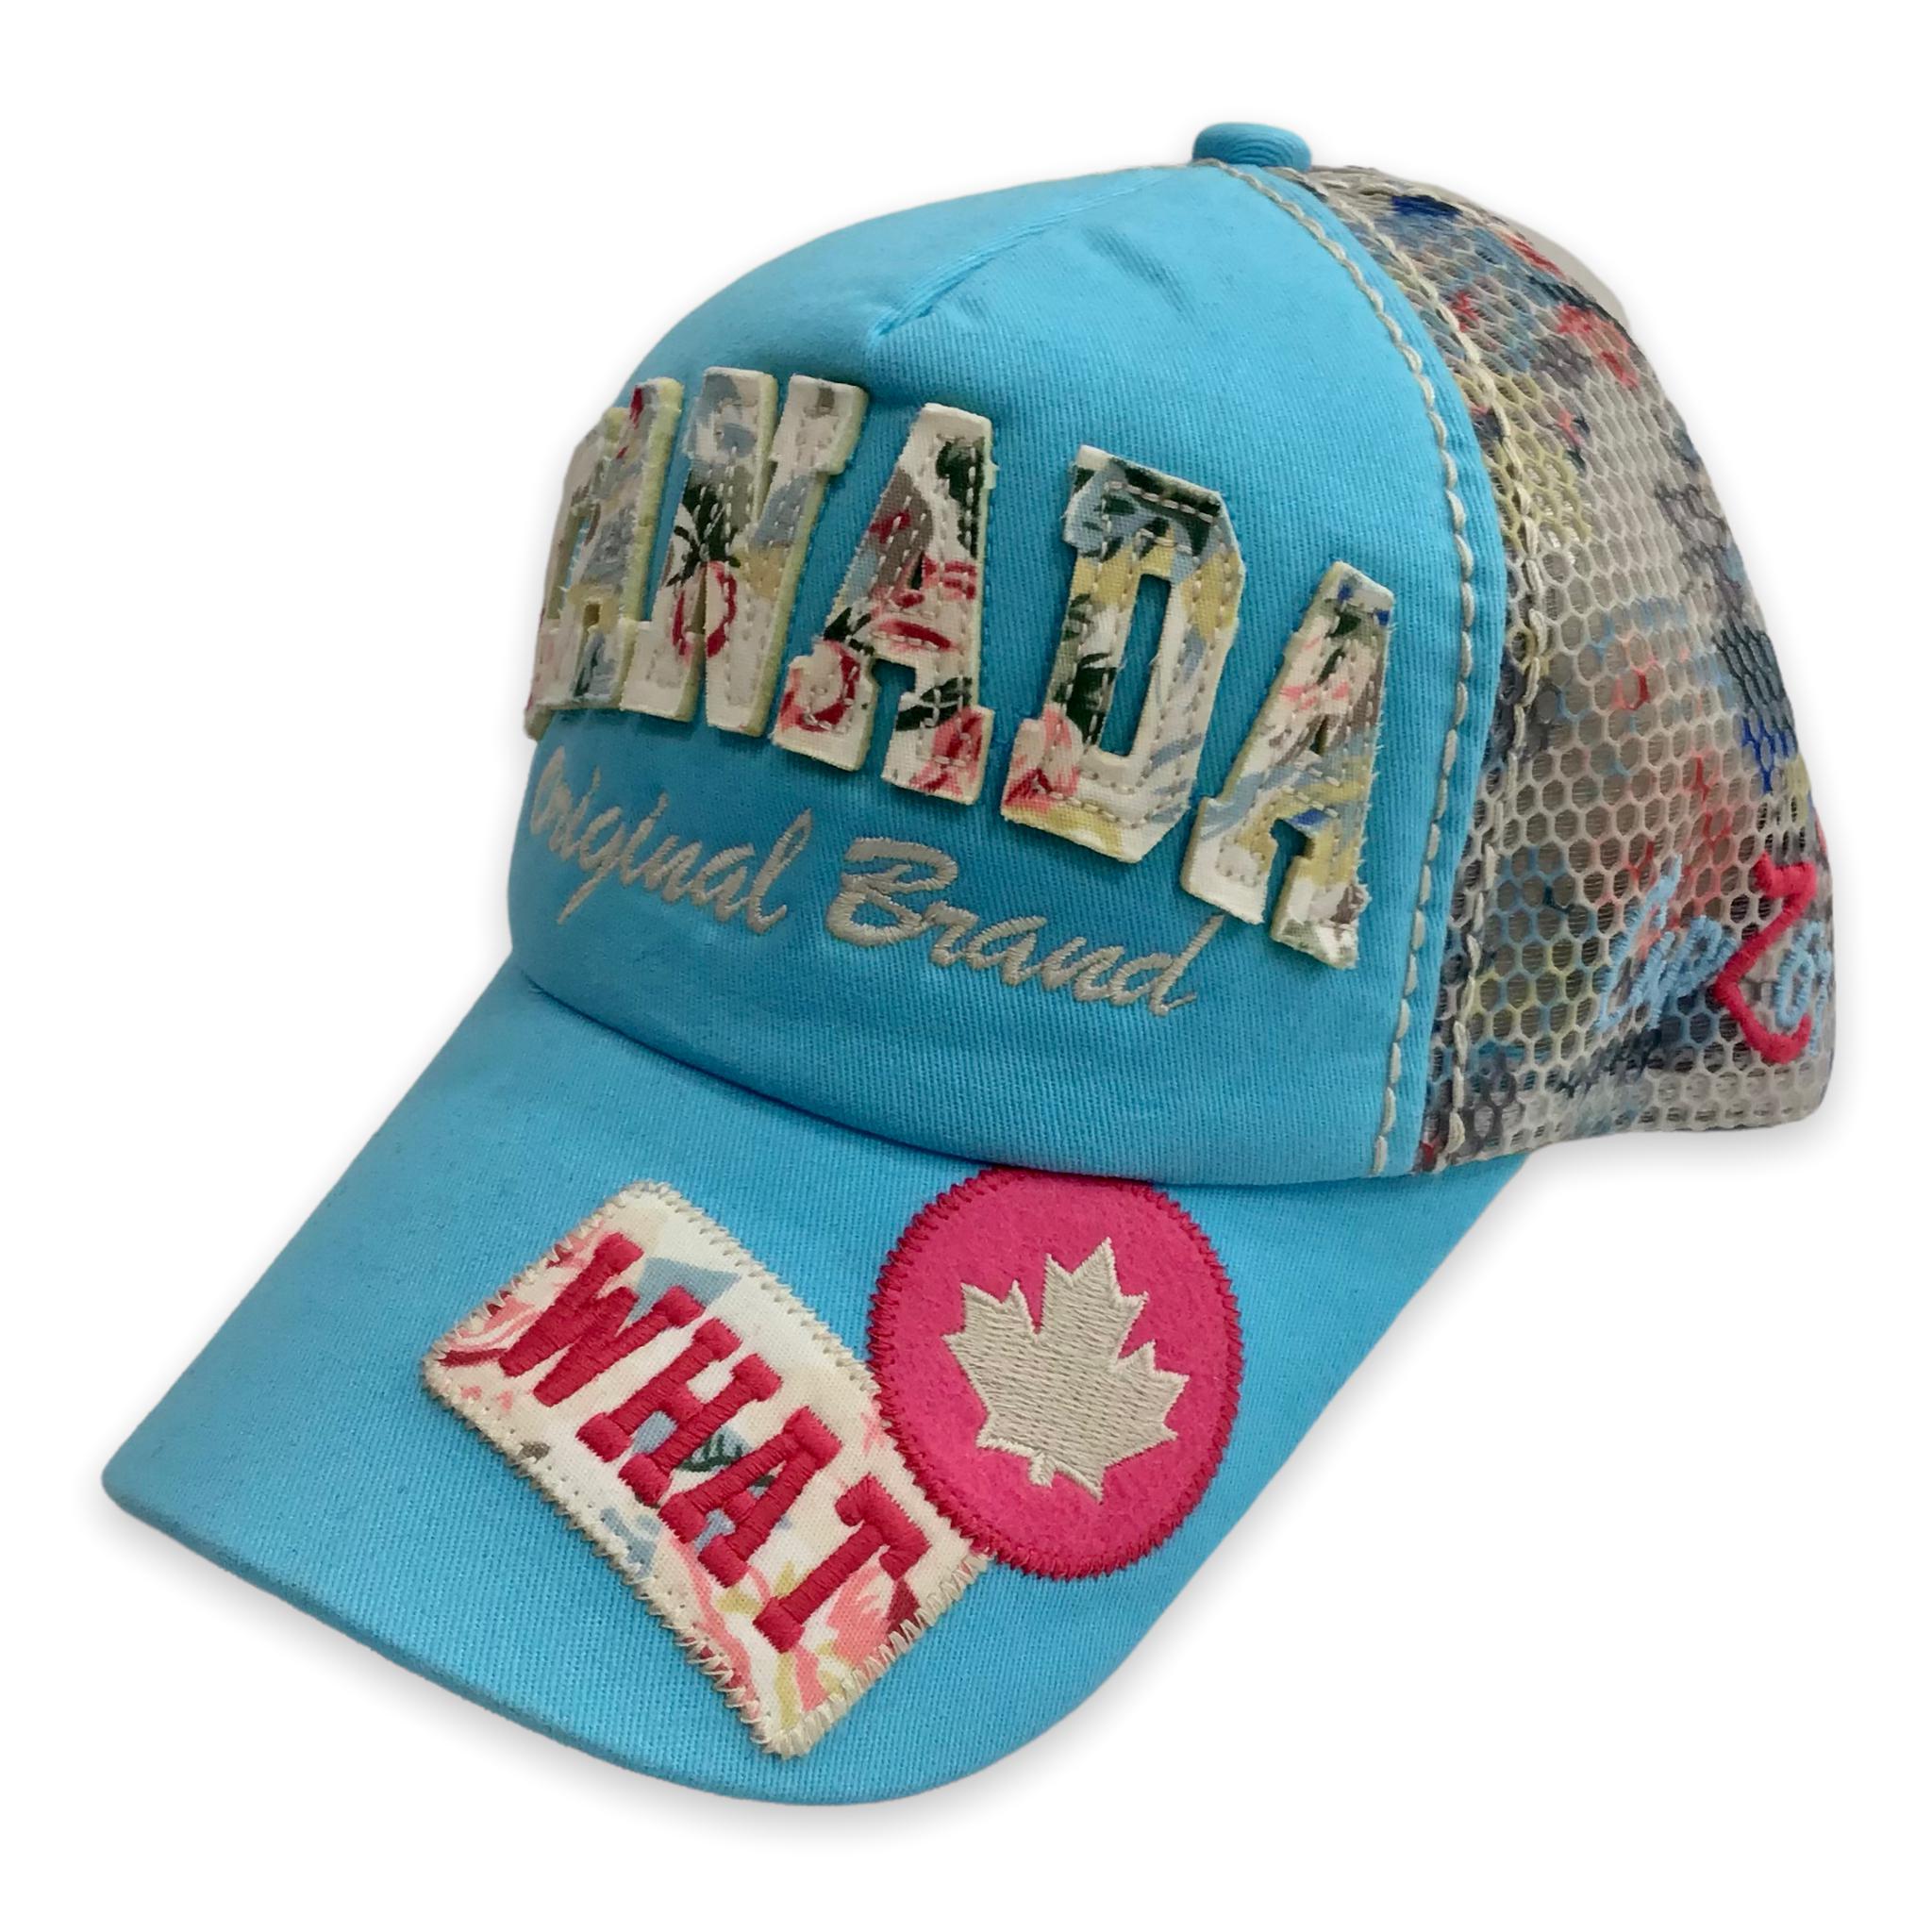 Baseball Cap Canada Original Brand (WHAT) Adjustable Mesh Hat